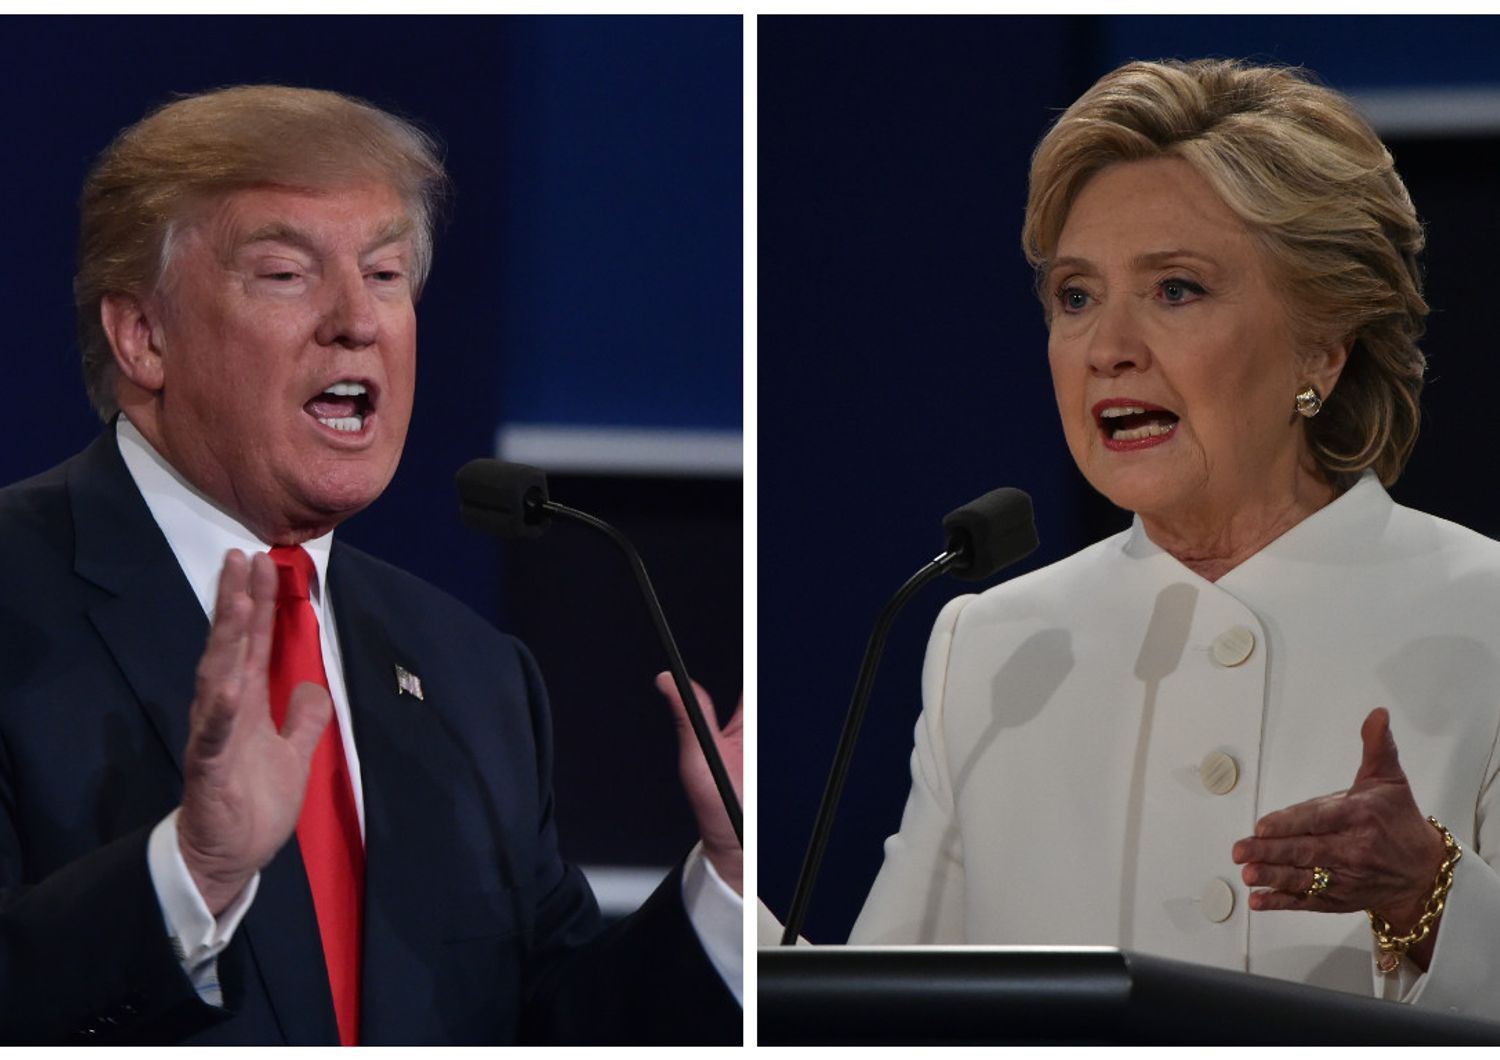 Clinton vince duello anche per sito populista Breitbart